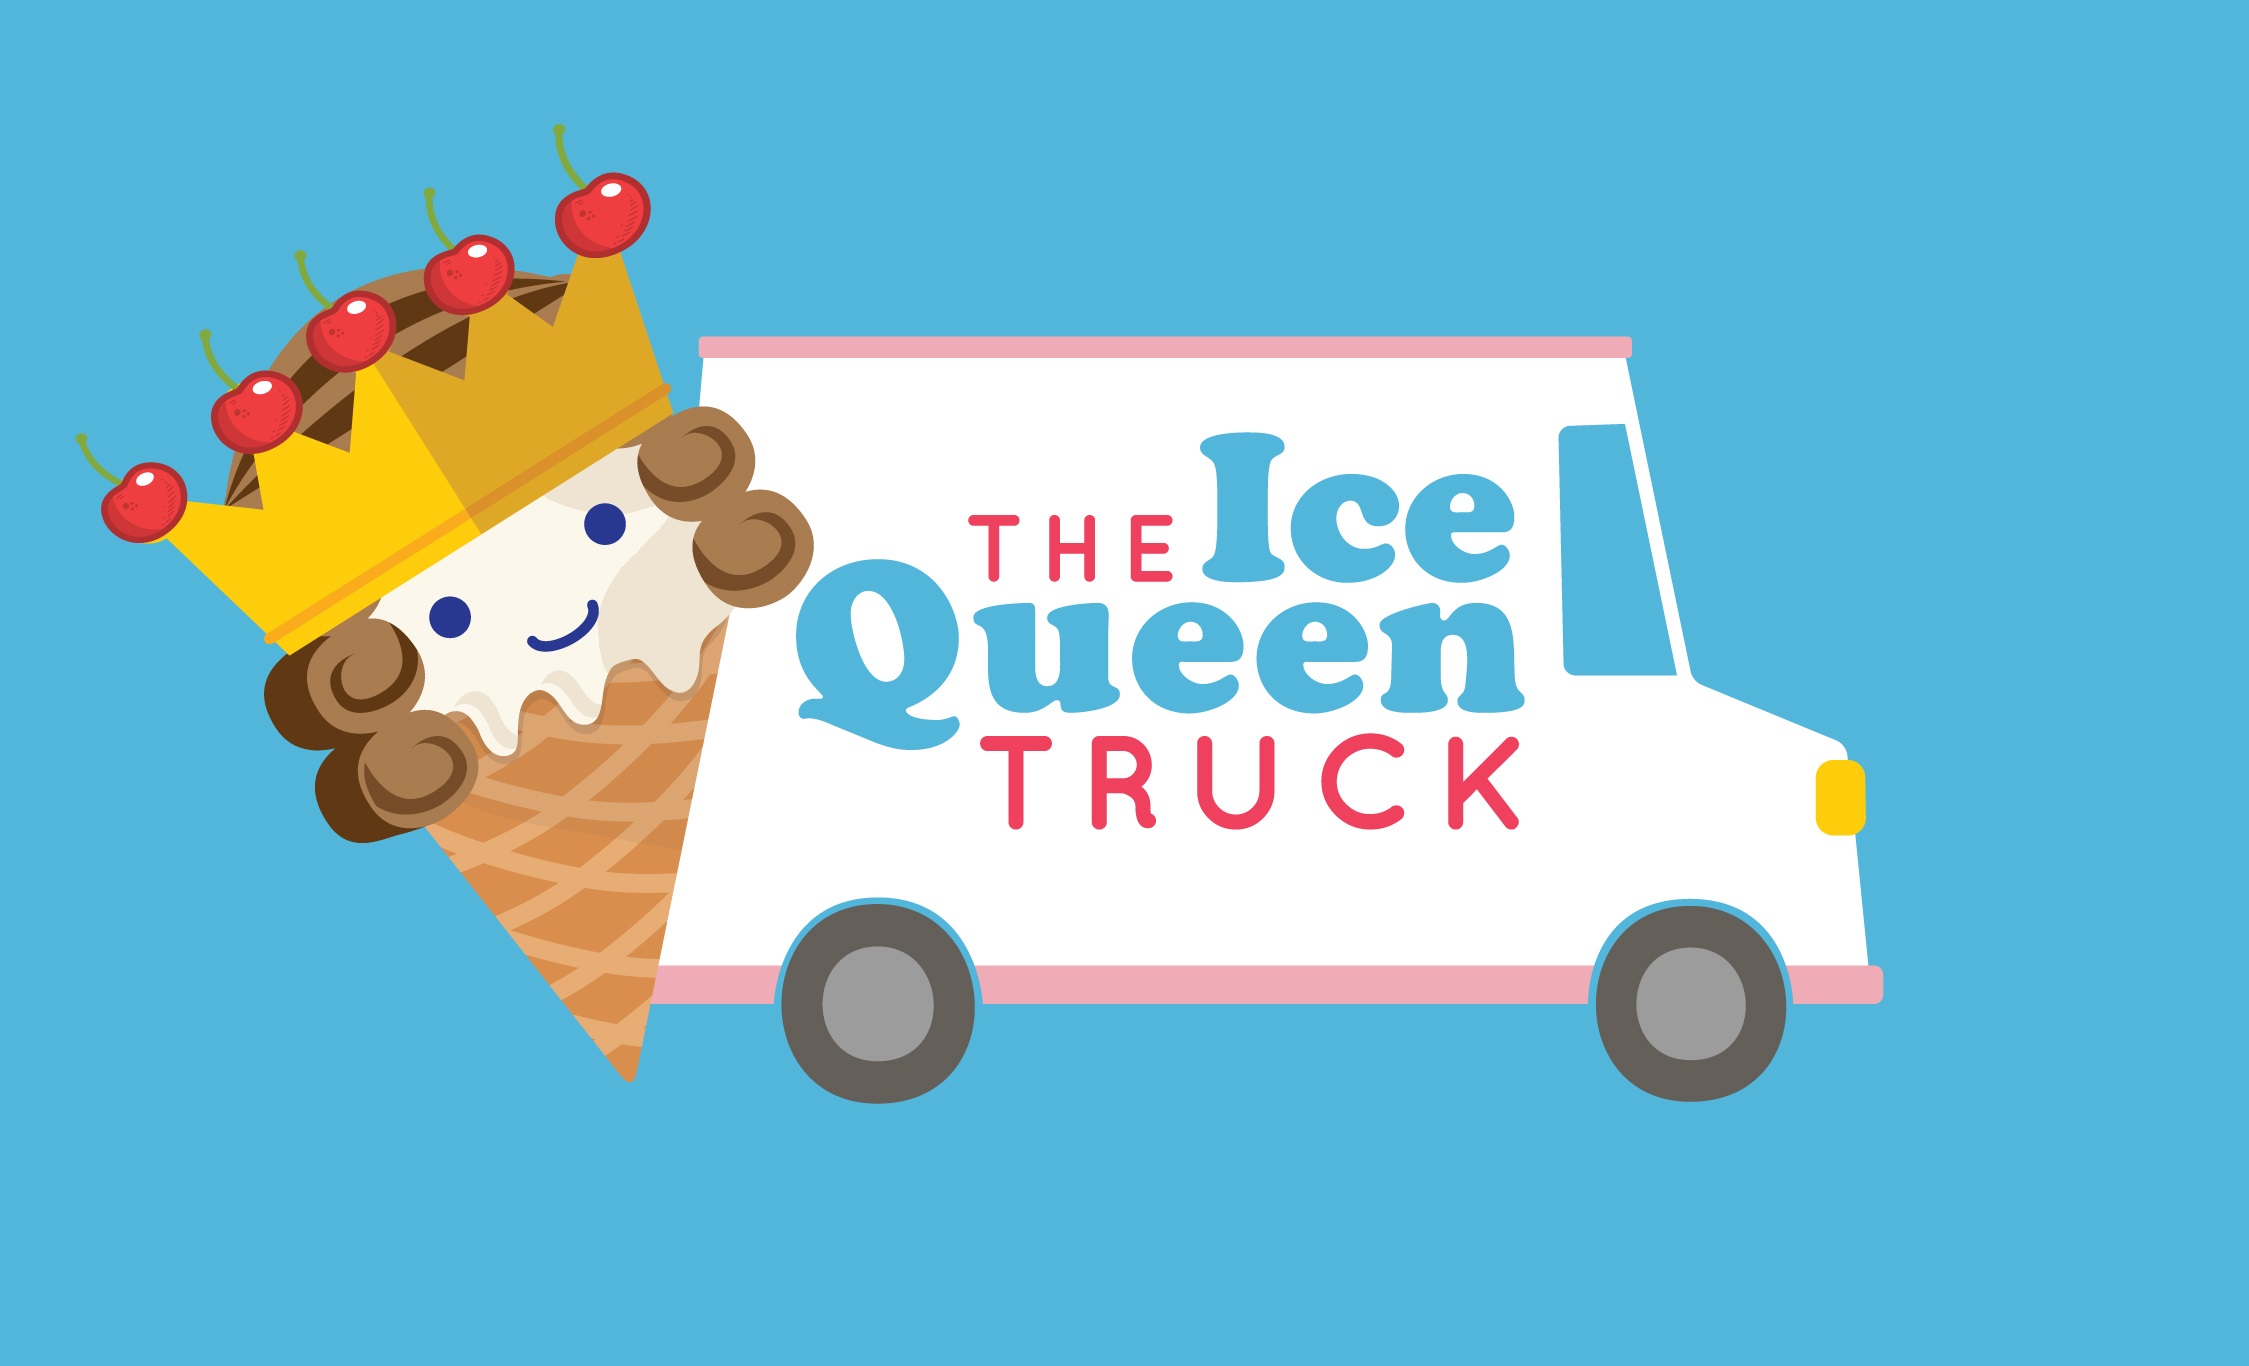 The Ice Queen truck